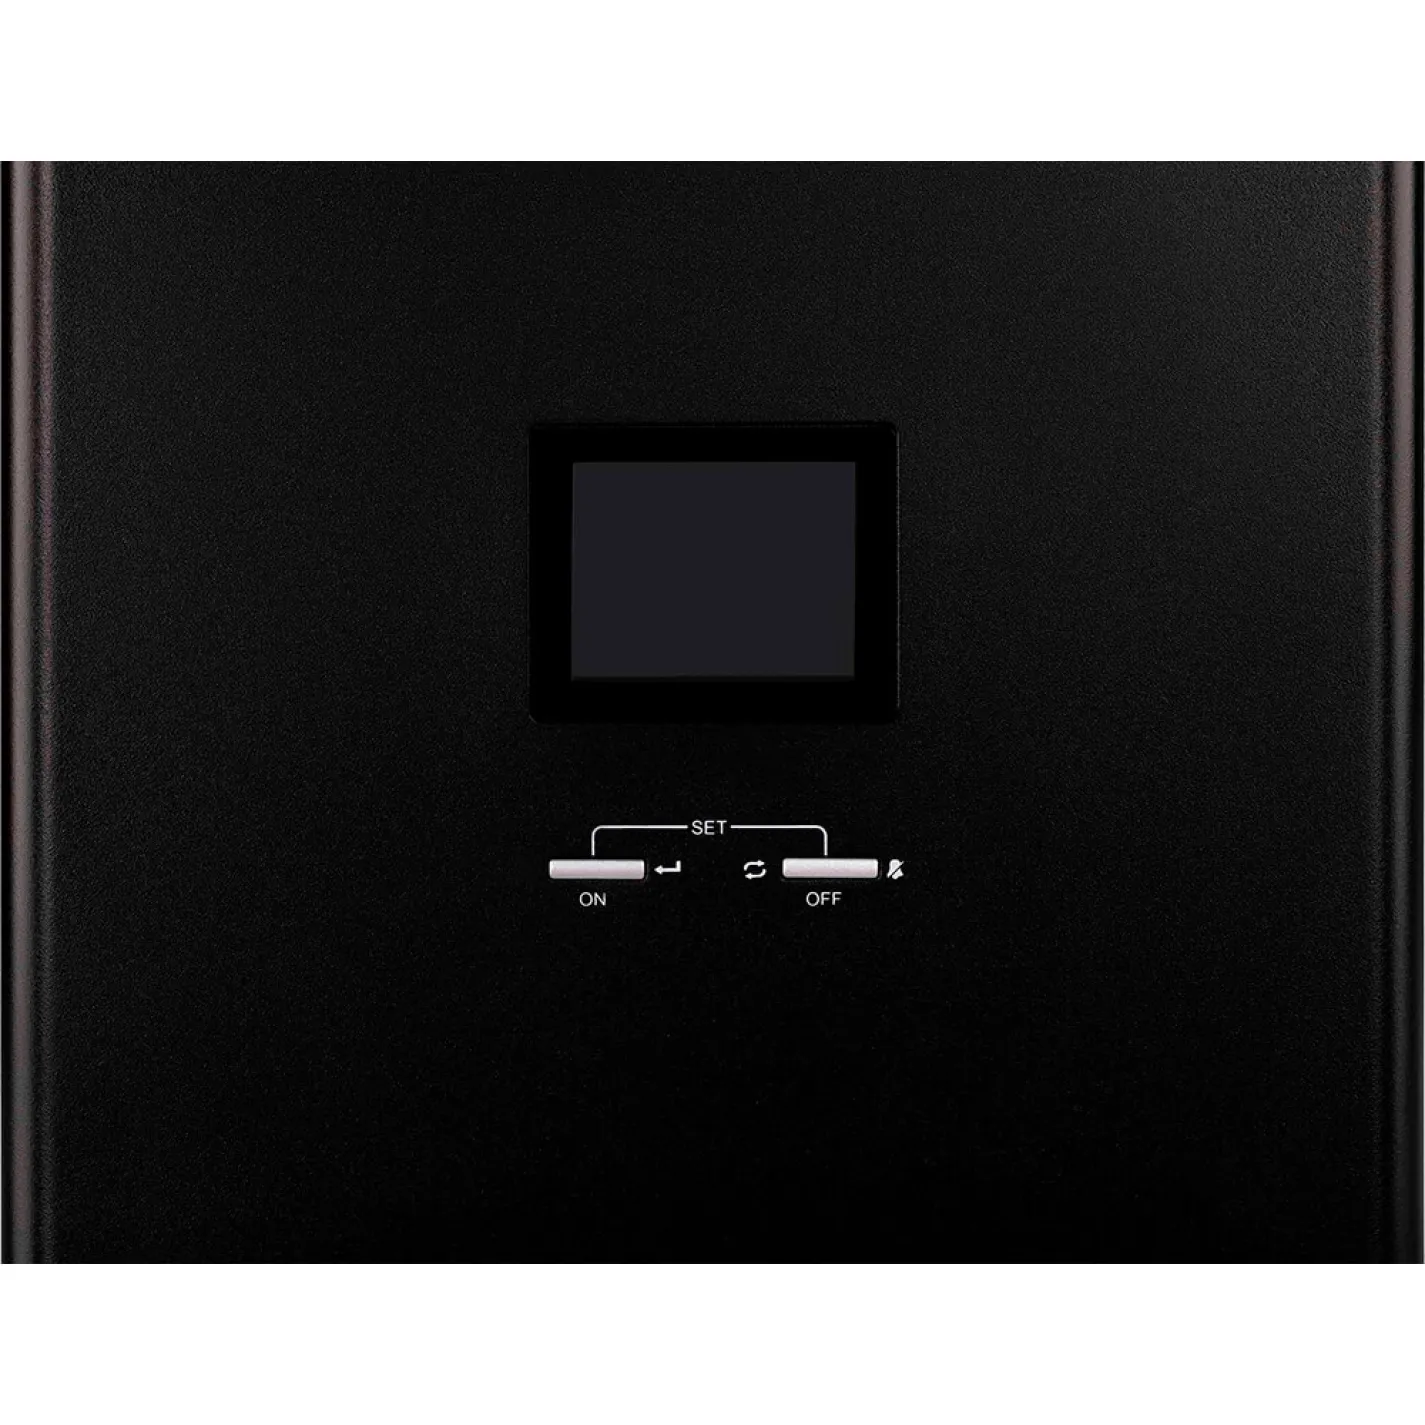 Инвертор 2E HI3500, 3500W, 24V - 230V, LCD, AVR - Фото 1